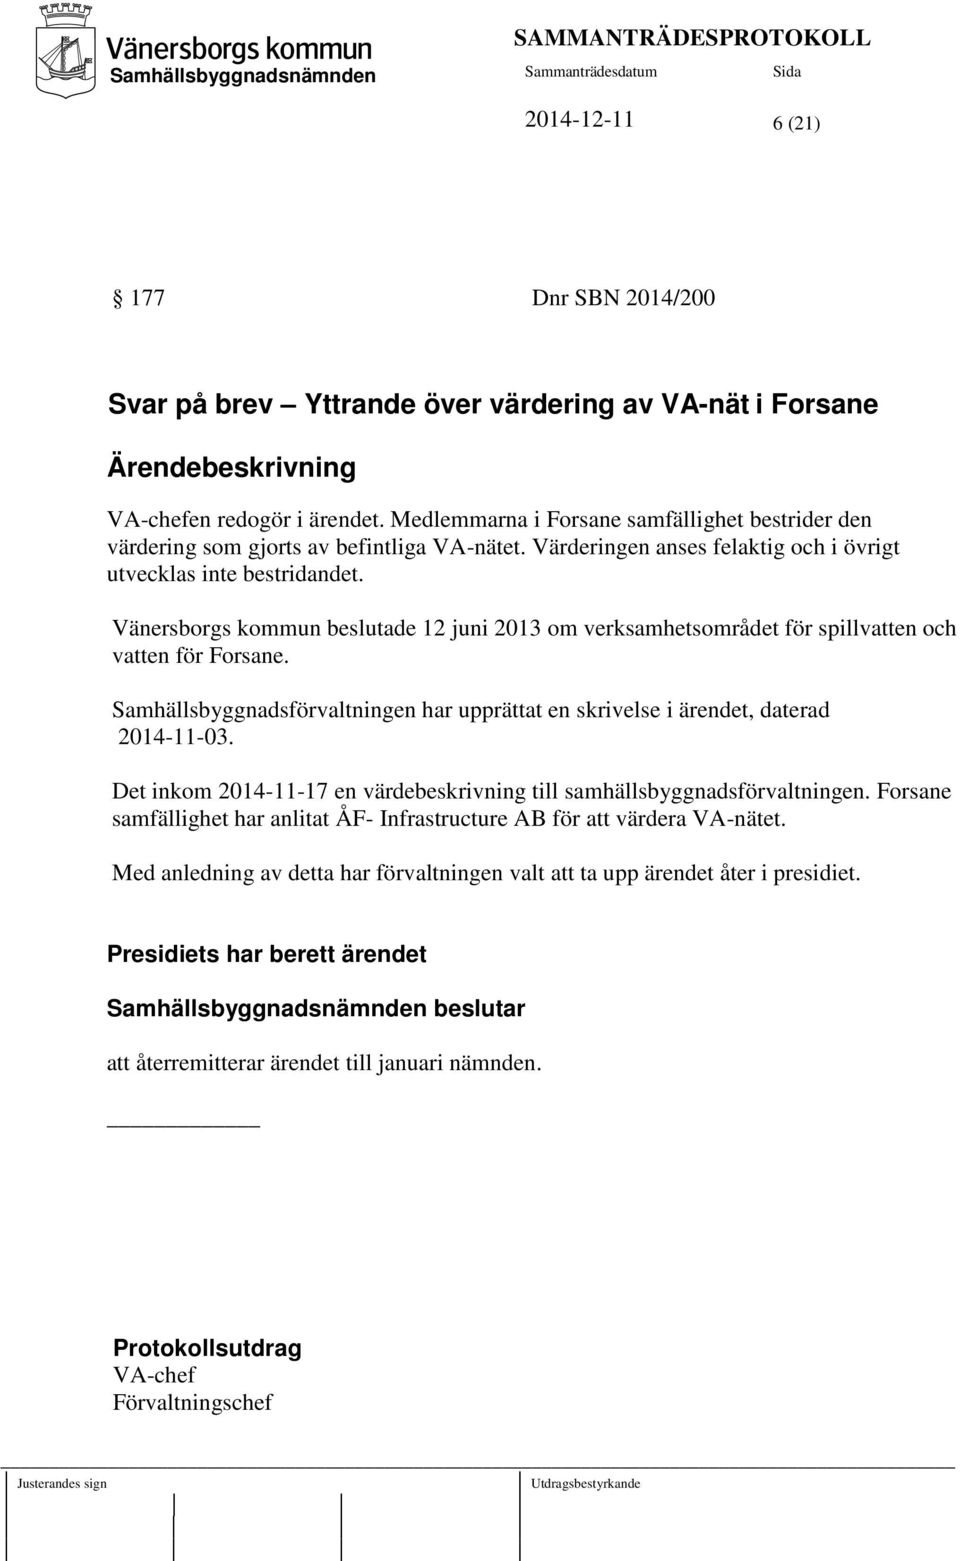 Vänersborgs kommun beslutade 12 juni 2013 om verksamhetsområdet för spillvatten och vatten för Forsane. Samhällsbyggnadsförvaltningen har upprättat en skrivelse i ärendet, daterad 2014-11-03.